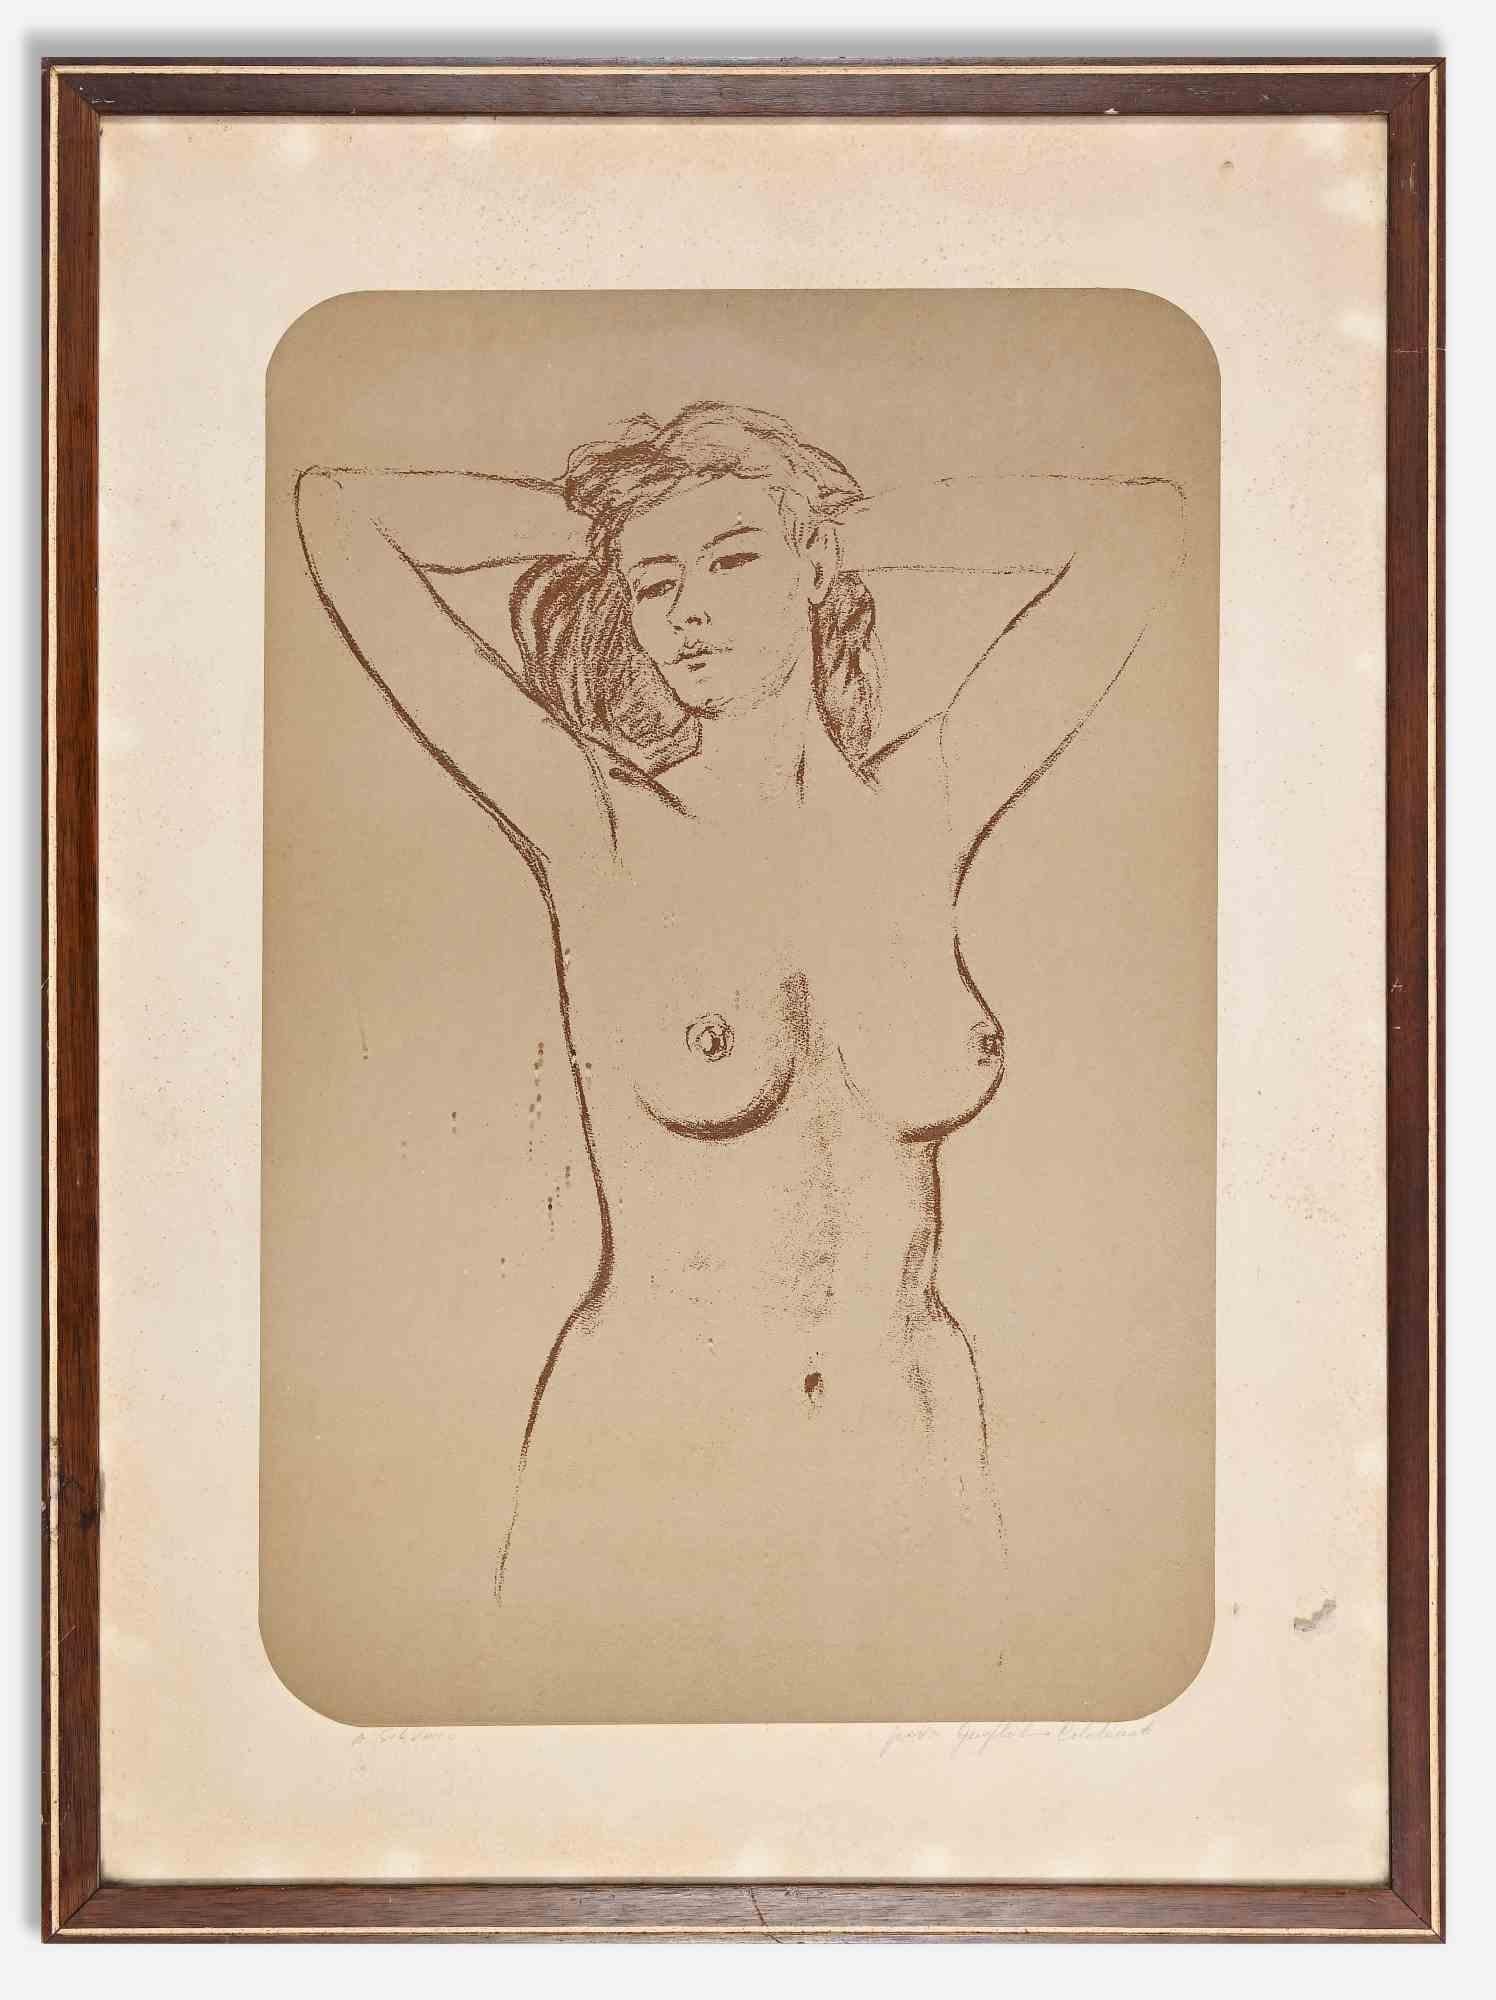 Der Frauenakt ist ein originelles modernes Kunstwerk des Künstlers Guglielmo Coladonato aus der Mitte des 20. Jahrhunderts.

Lithographie auf Papier. 

Signatur und handschriftliche Widmung am unteren Rand.

Angemessener Zustand (einige Stockflecken